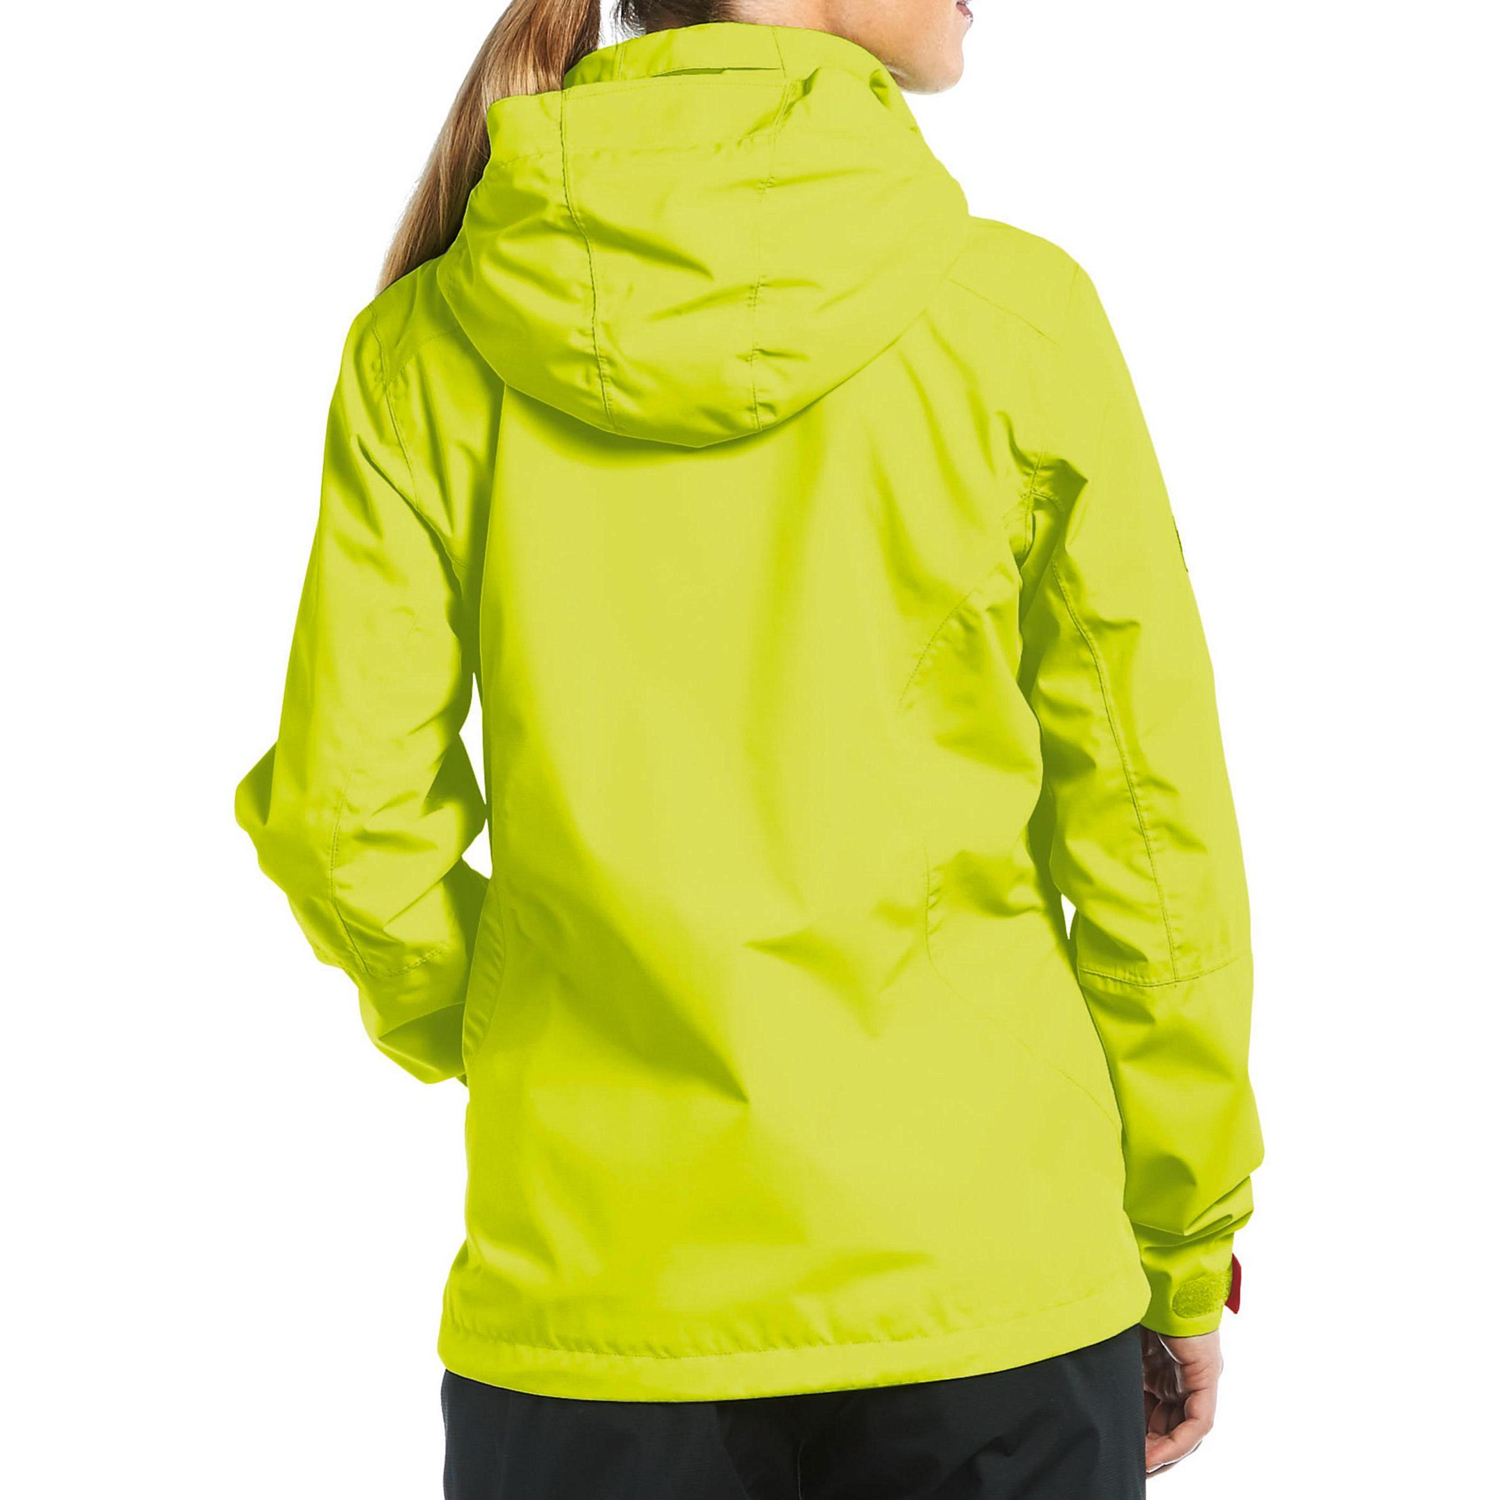 Куртка для активного отдыха Maier 2016 Dual Protection Drava pfcf spring